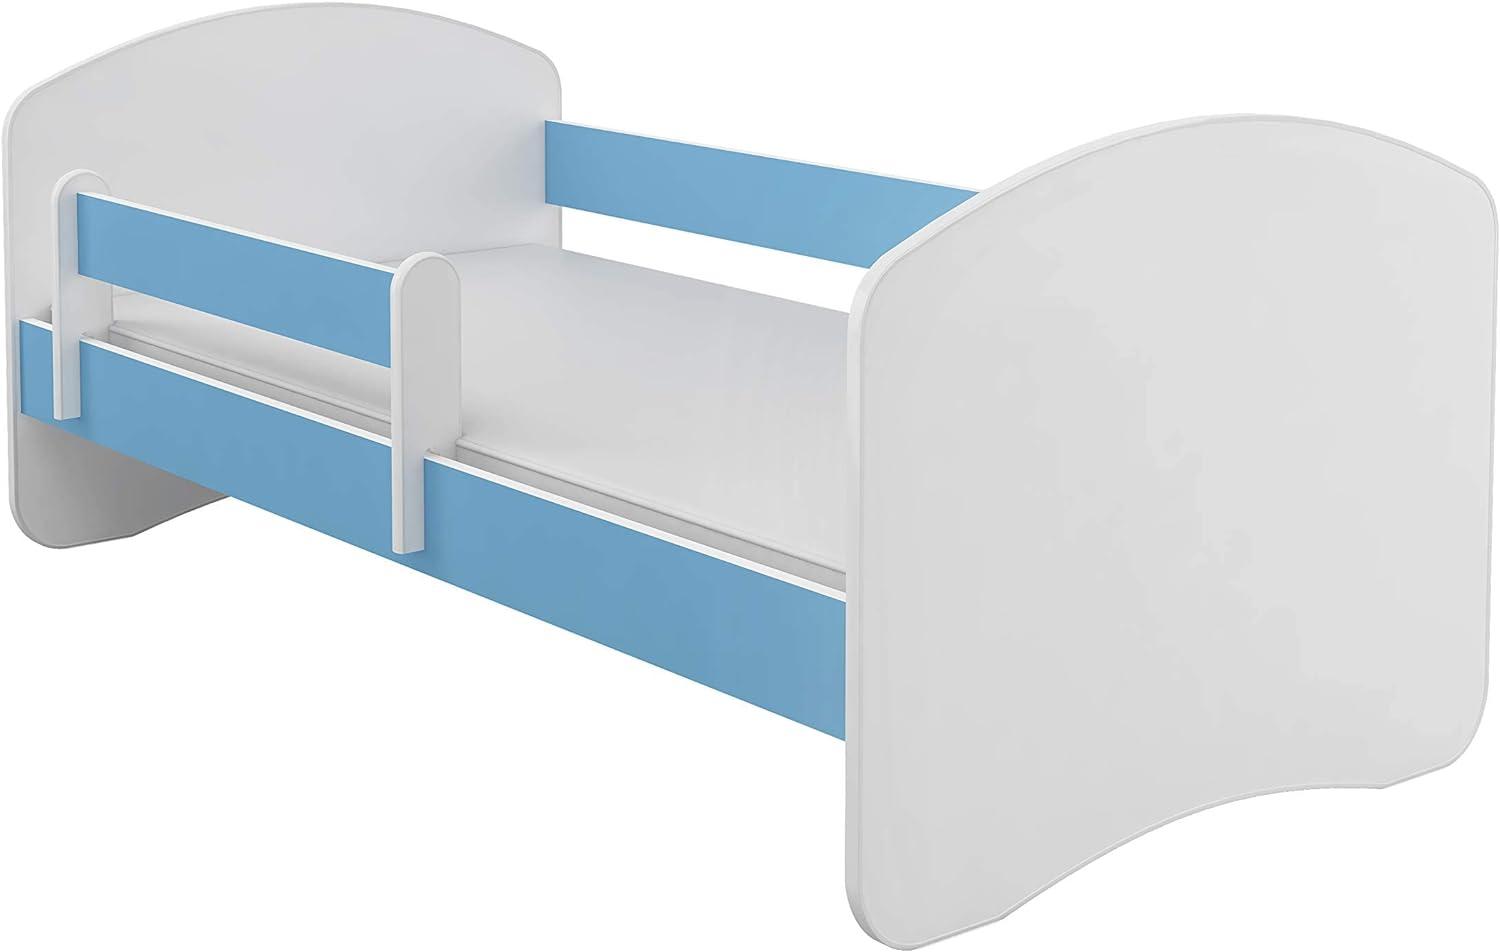 Kinderbett Jugendbett mit einer Schublade und Matratze Weiß ACMA II (140x70 cm, Blau) Bild 1